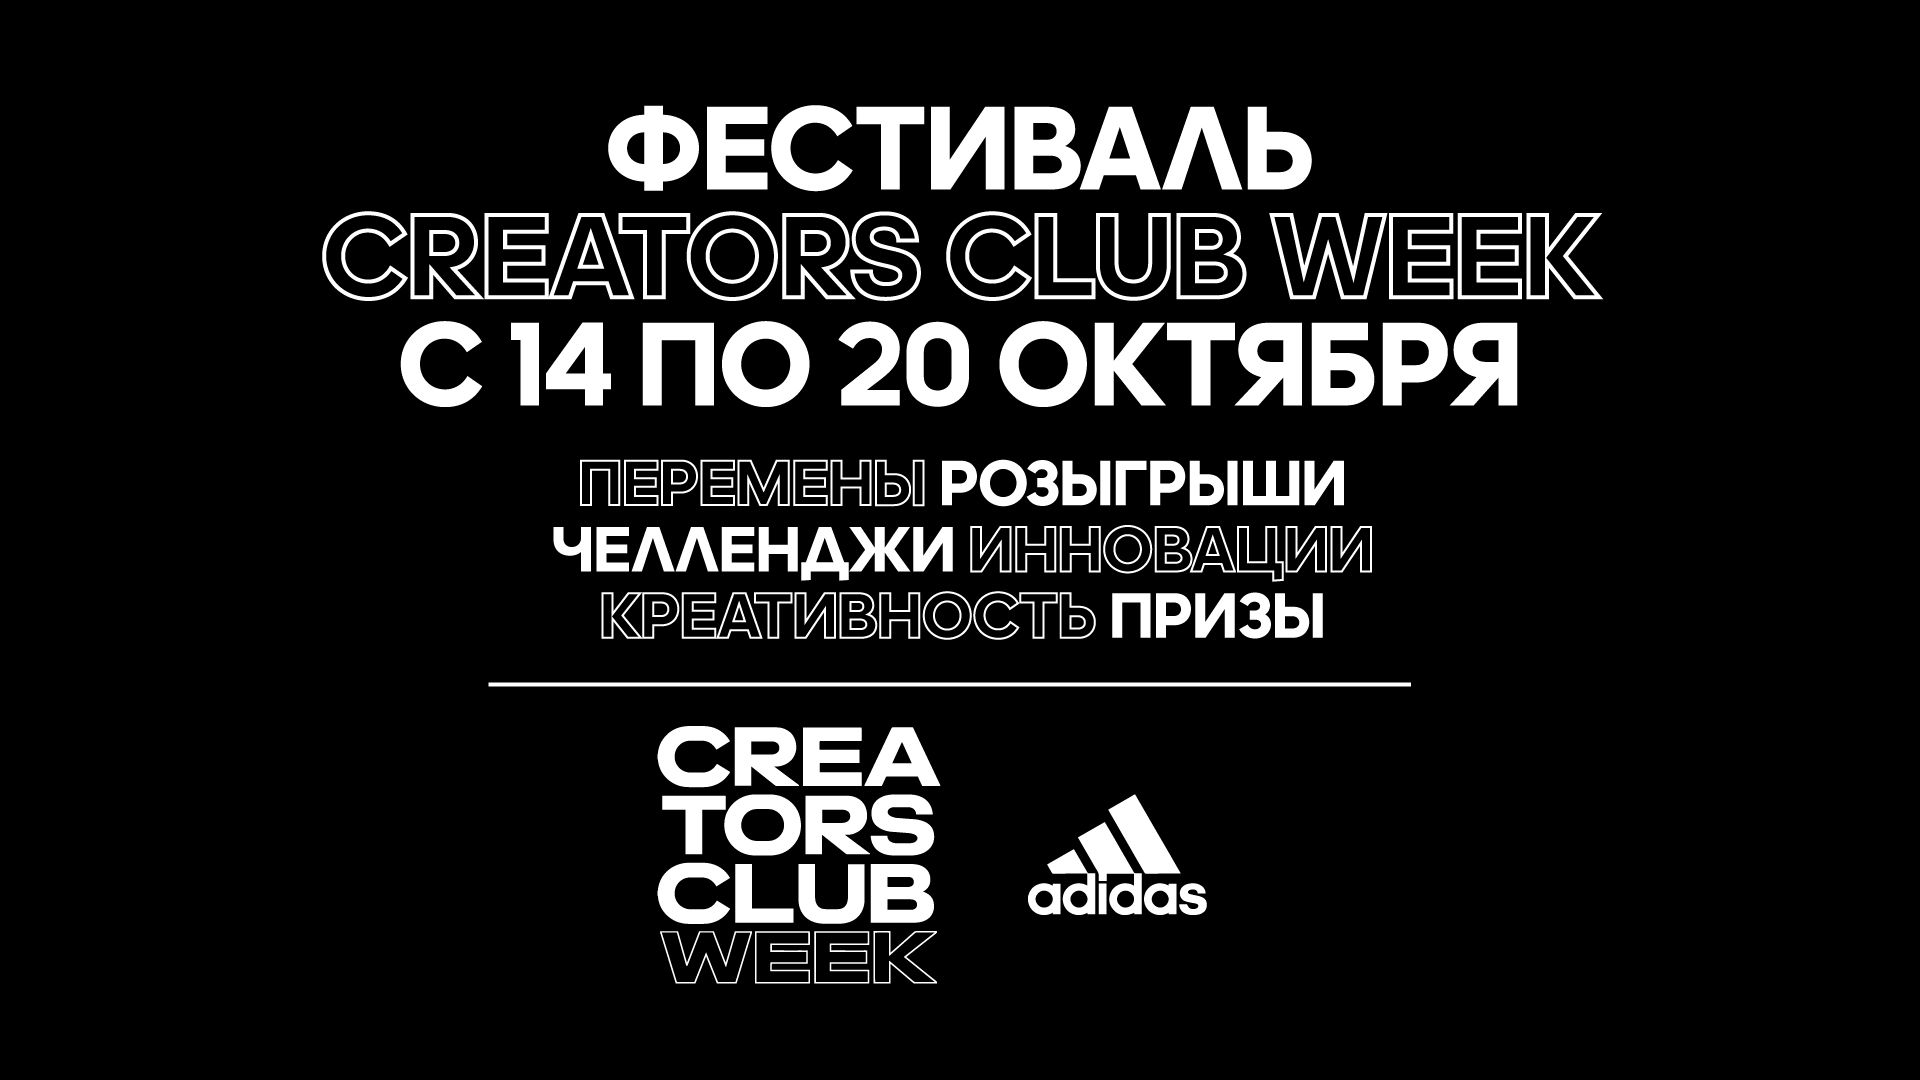 Мастер-класс Карли Клосс и розыгрыши — adidas проводит фестиваль Creators Club Week